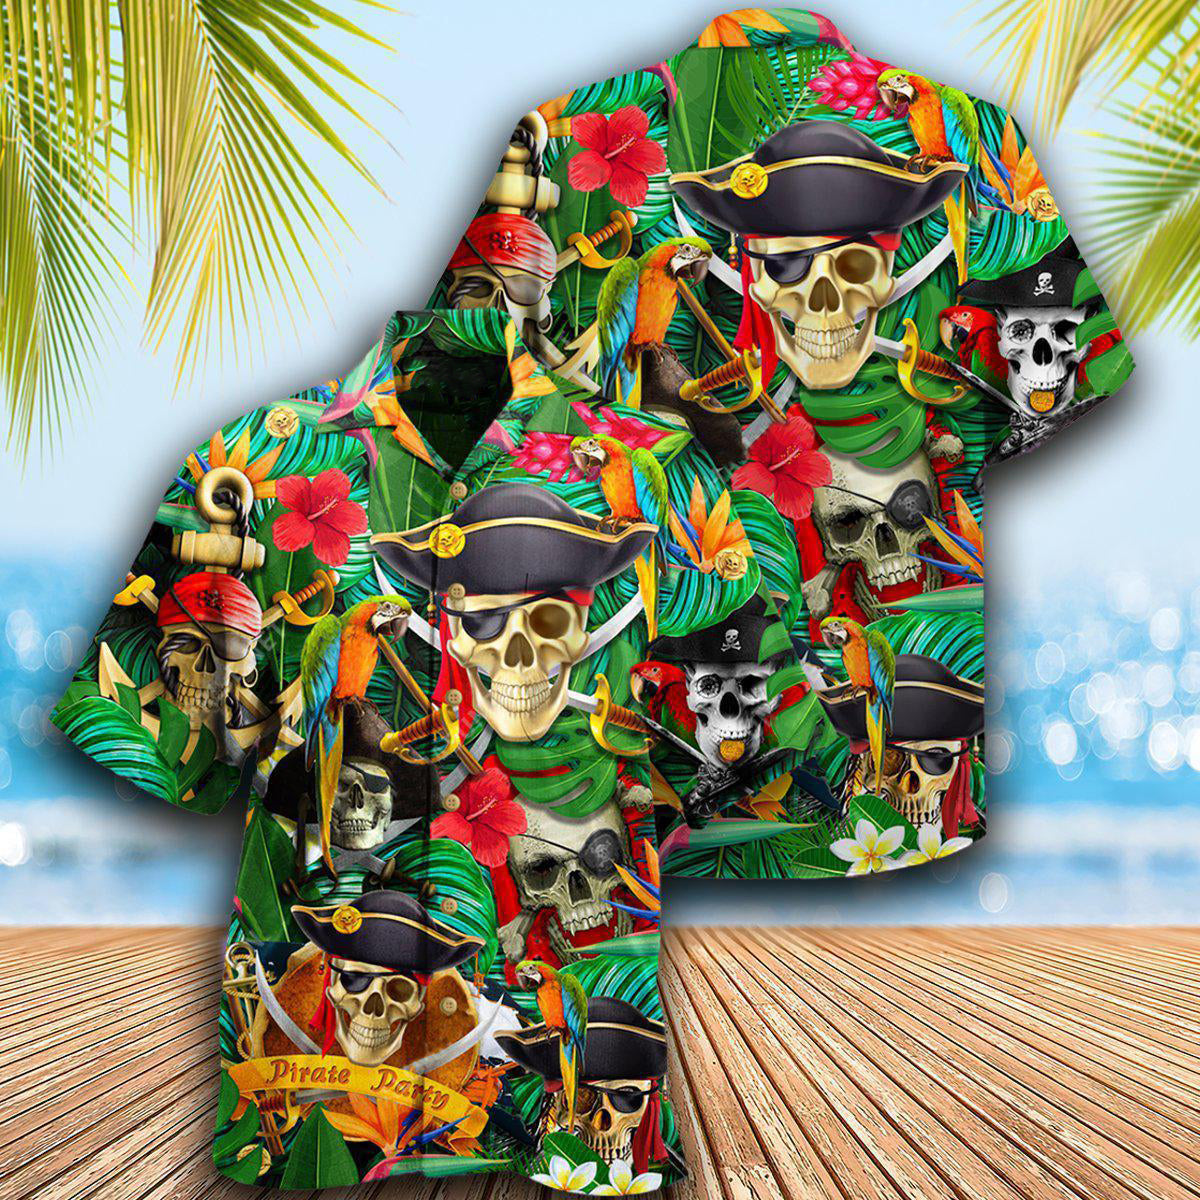 Pirate Skull Pirates Make Ledgends - Hawaiian Shirt - Owls Matrix LTD